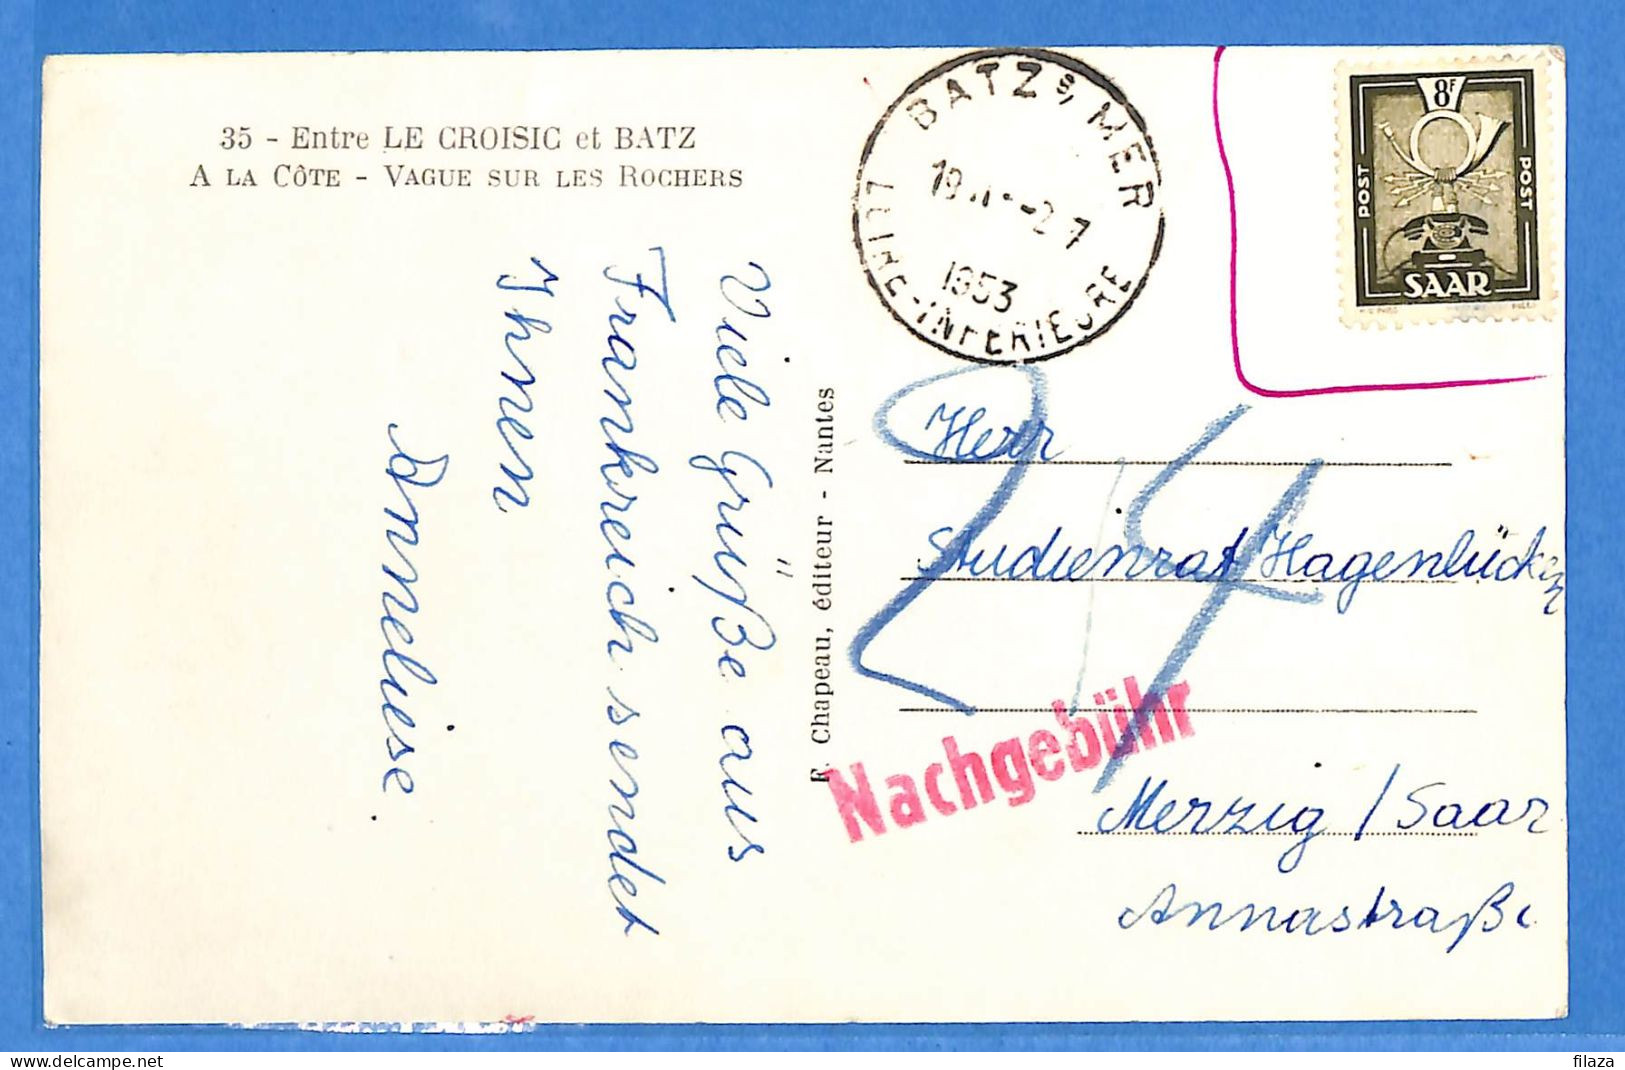 Saar - 1953 - Carte Postale De Batz Sur Mer - G31866 - Lettres & Documents